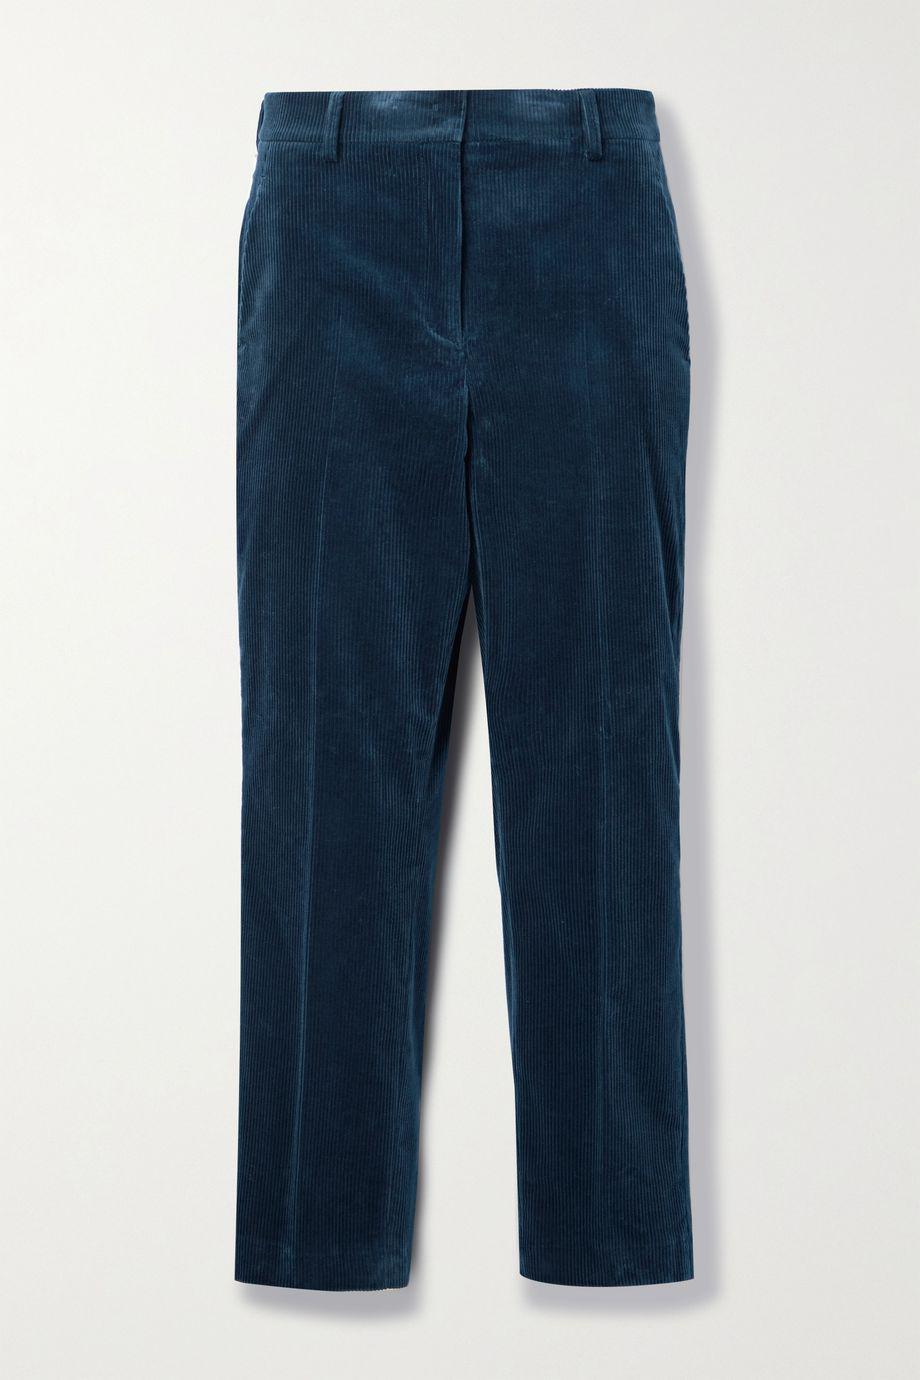 Flavin cropped cotton-blend corduroy straight-leg pants by AKRIS